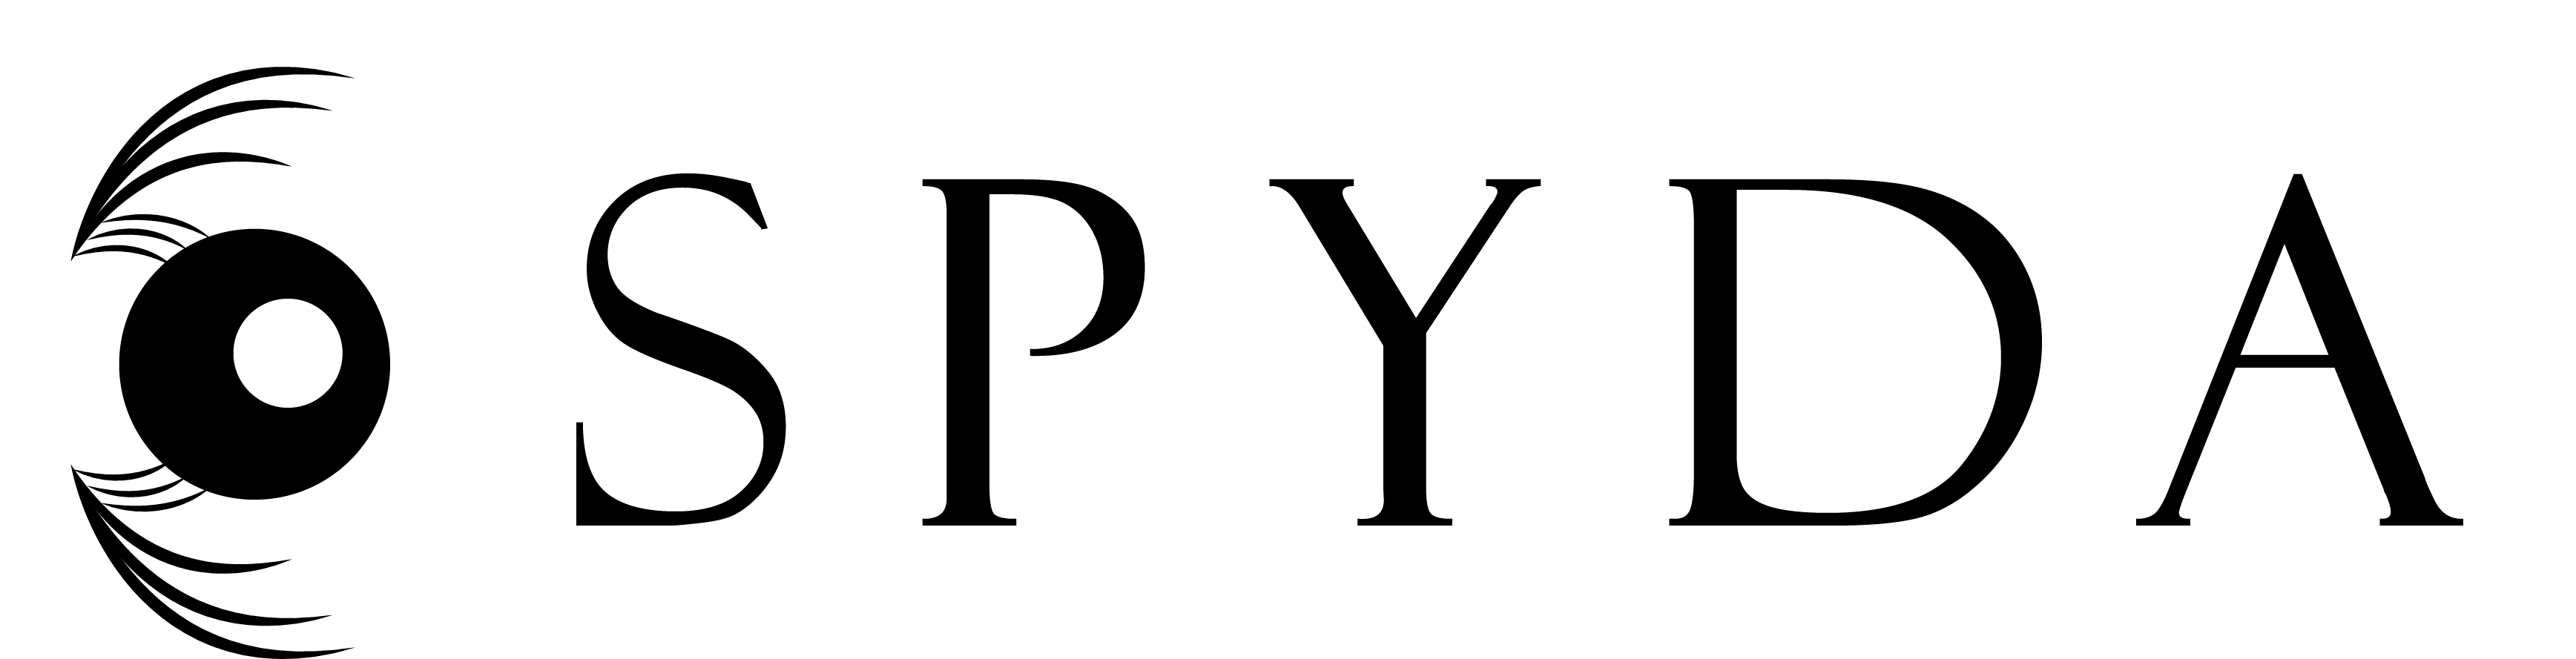 spyda logo